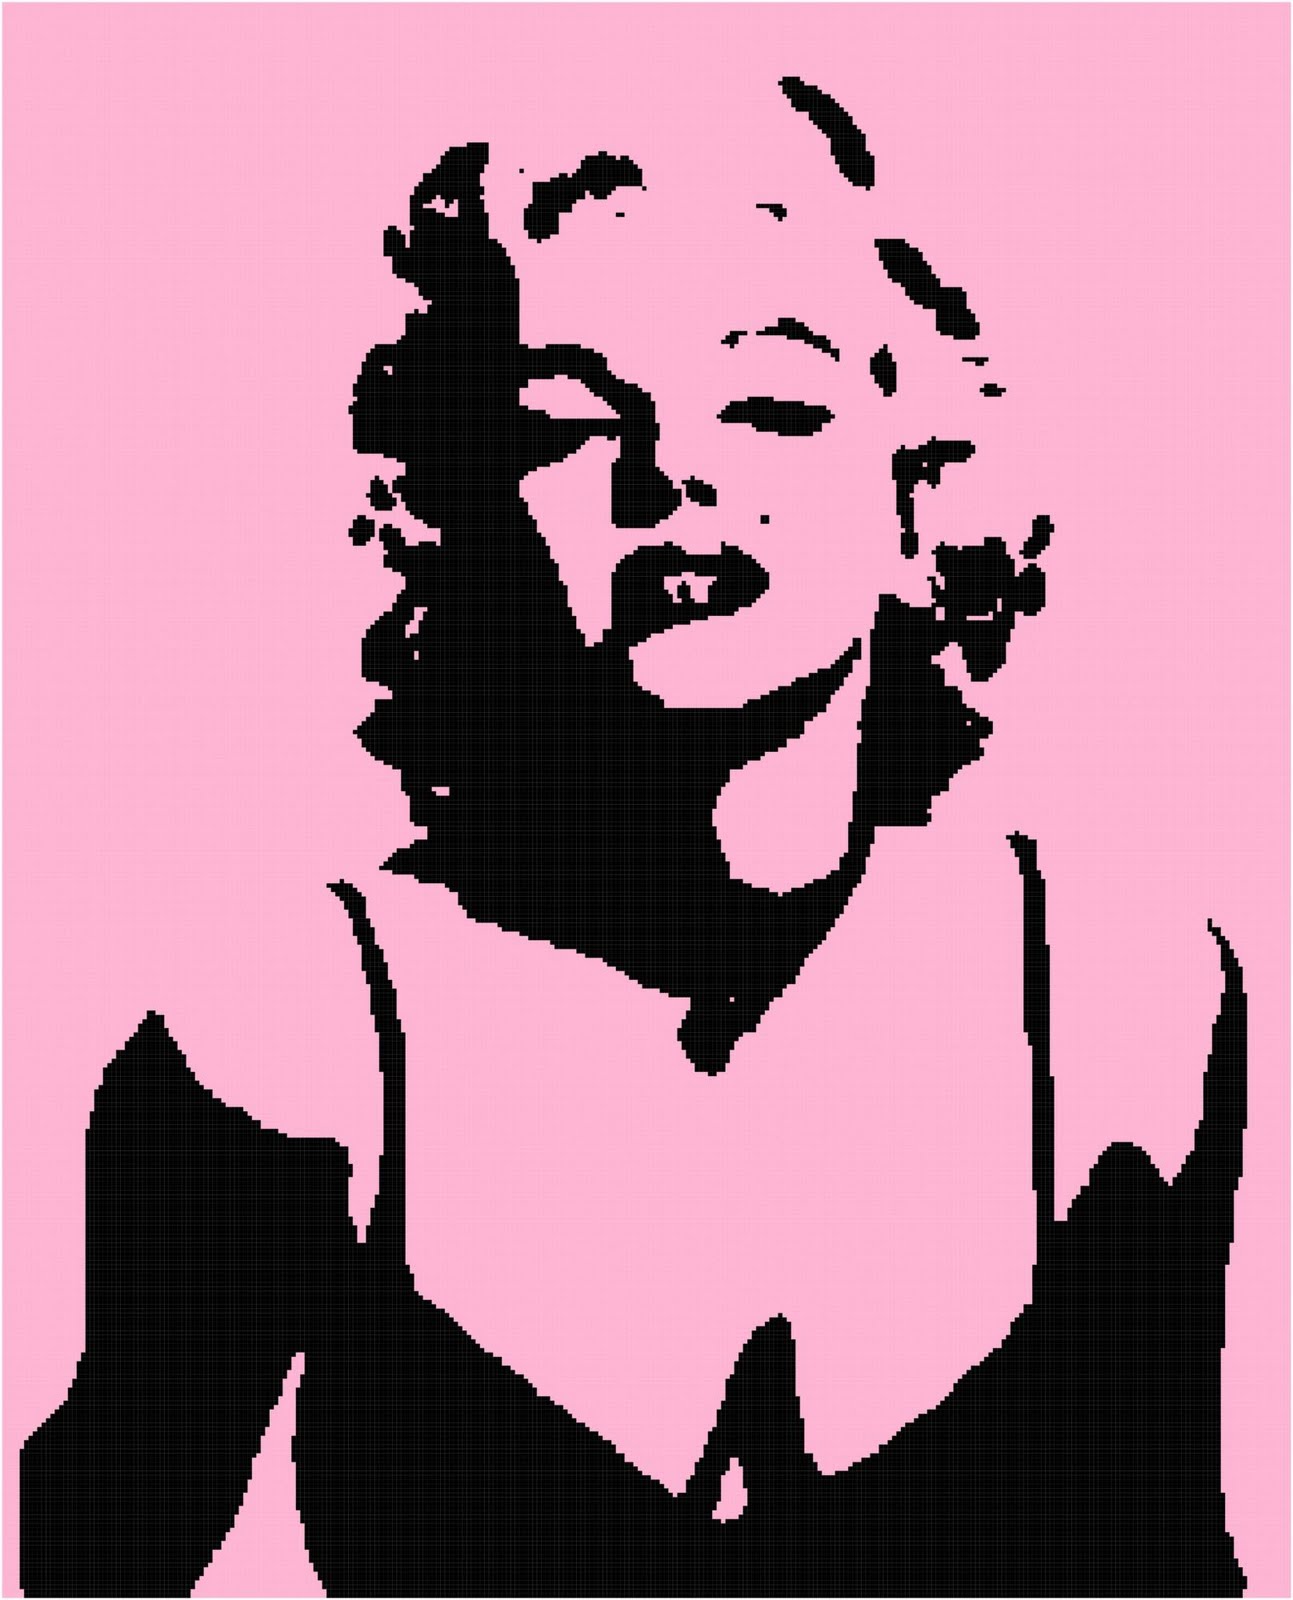 http://1.bp.blogspot.com/-t4TFXq2j9o0/TcAxjP2dewI/AAAAAAAAAC4/L3dkOWgTcRg/s1600/Marilyn+Monroe+Silhouette-3.jpg